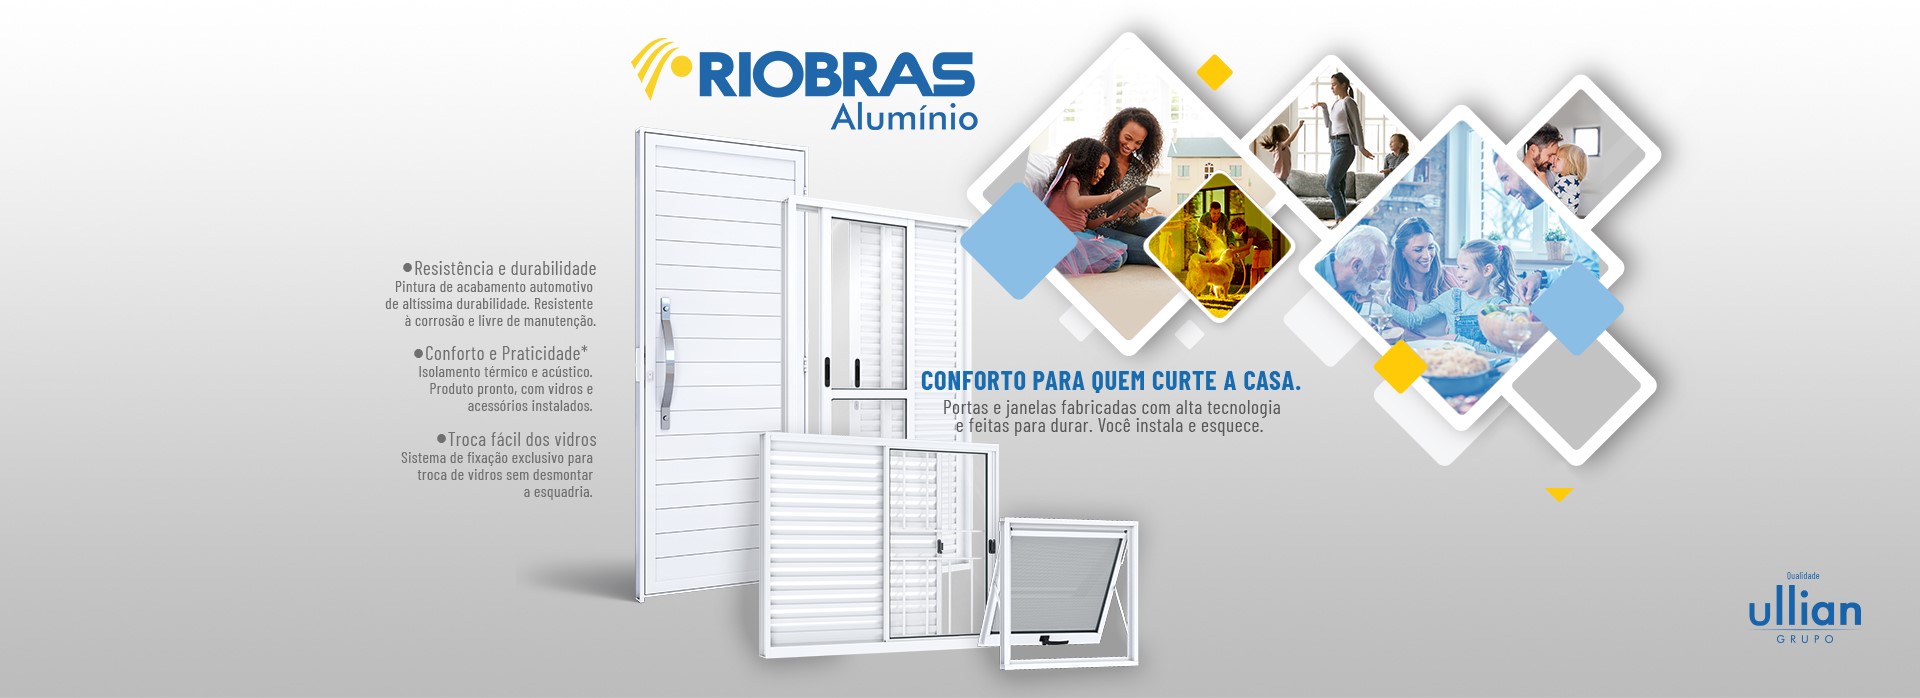 Portas e janelas em alumínio branco da marca Riobras